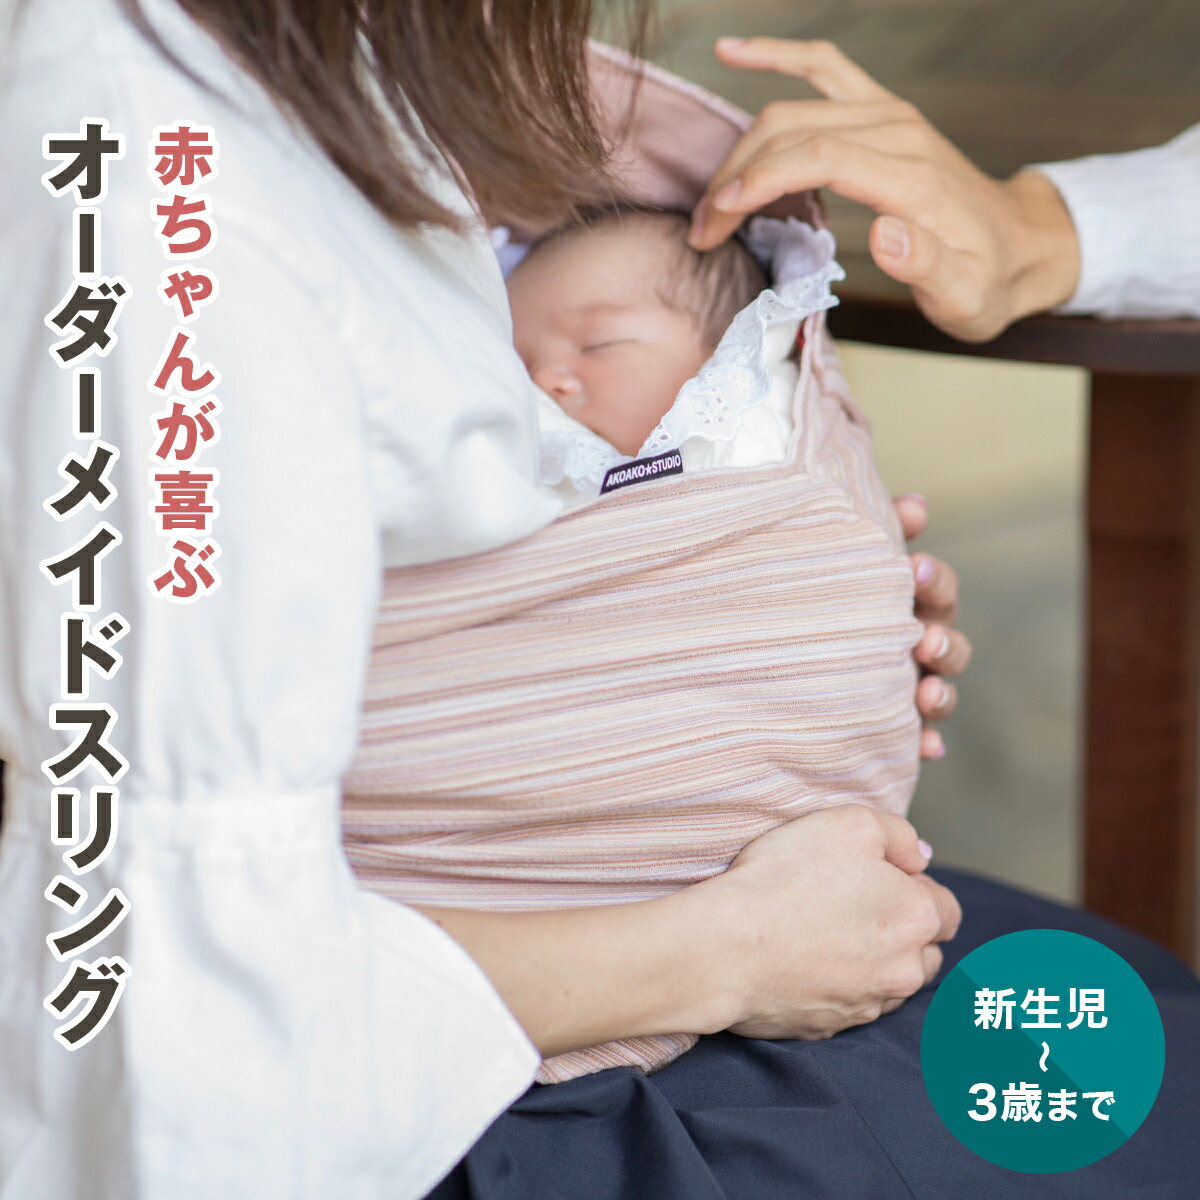 新生児男の子 首がすわっていない新生児でも使える抱っこ紐のおすすめランキング キテミヨ Kitemiyo